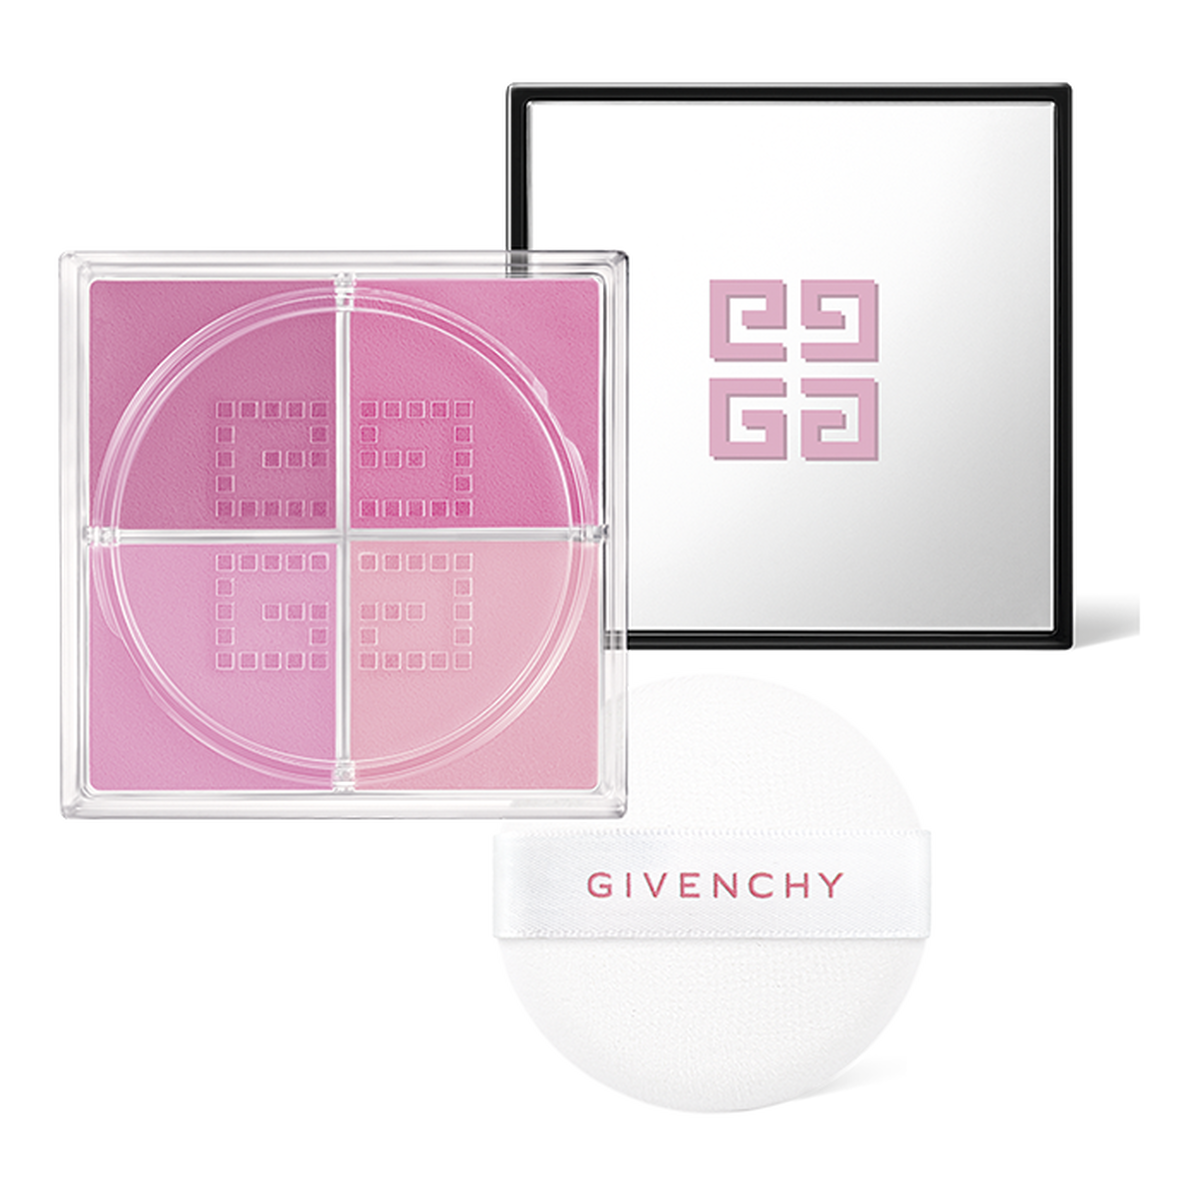 プリズム・リーブル・ブラッシュ - チーク カラー | Givenchy Beauty